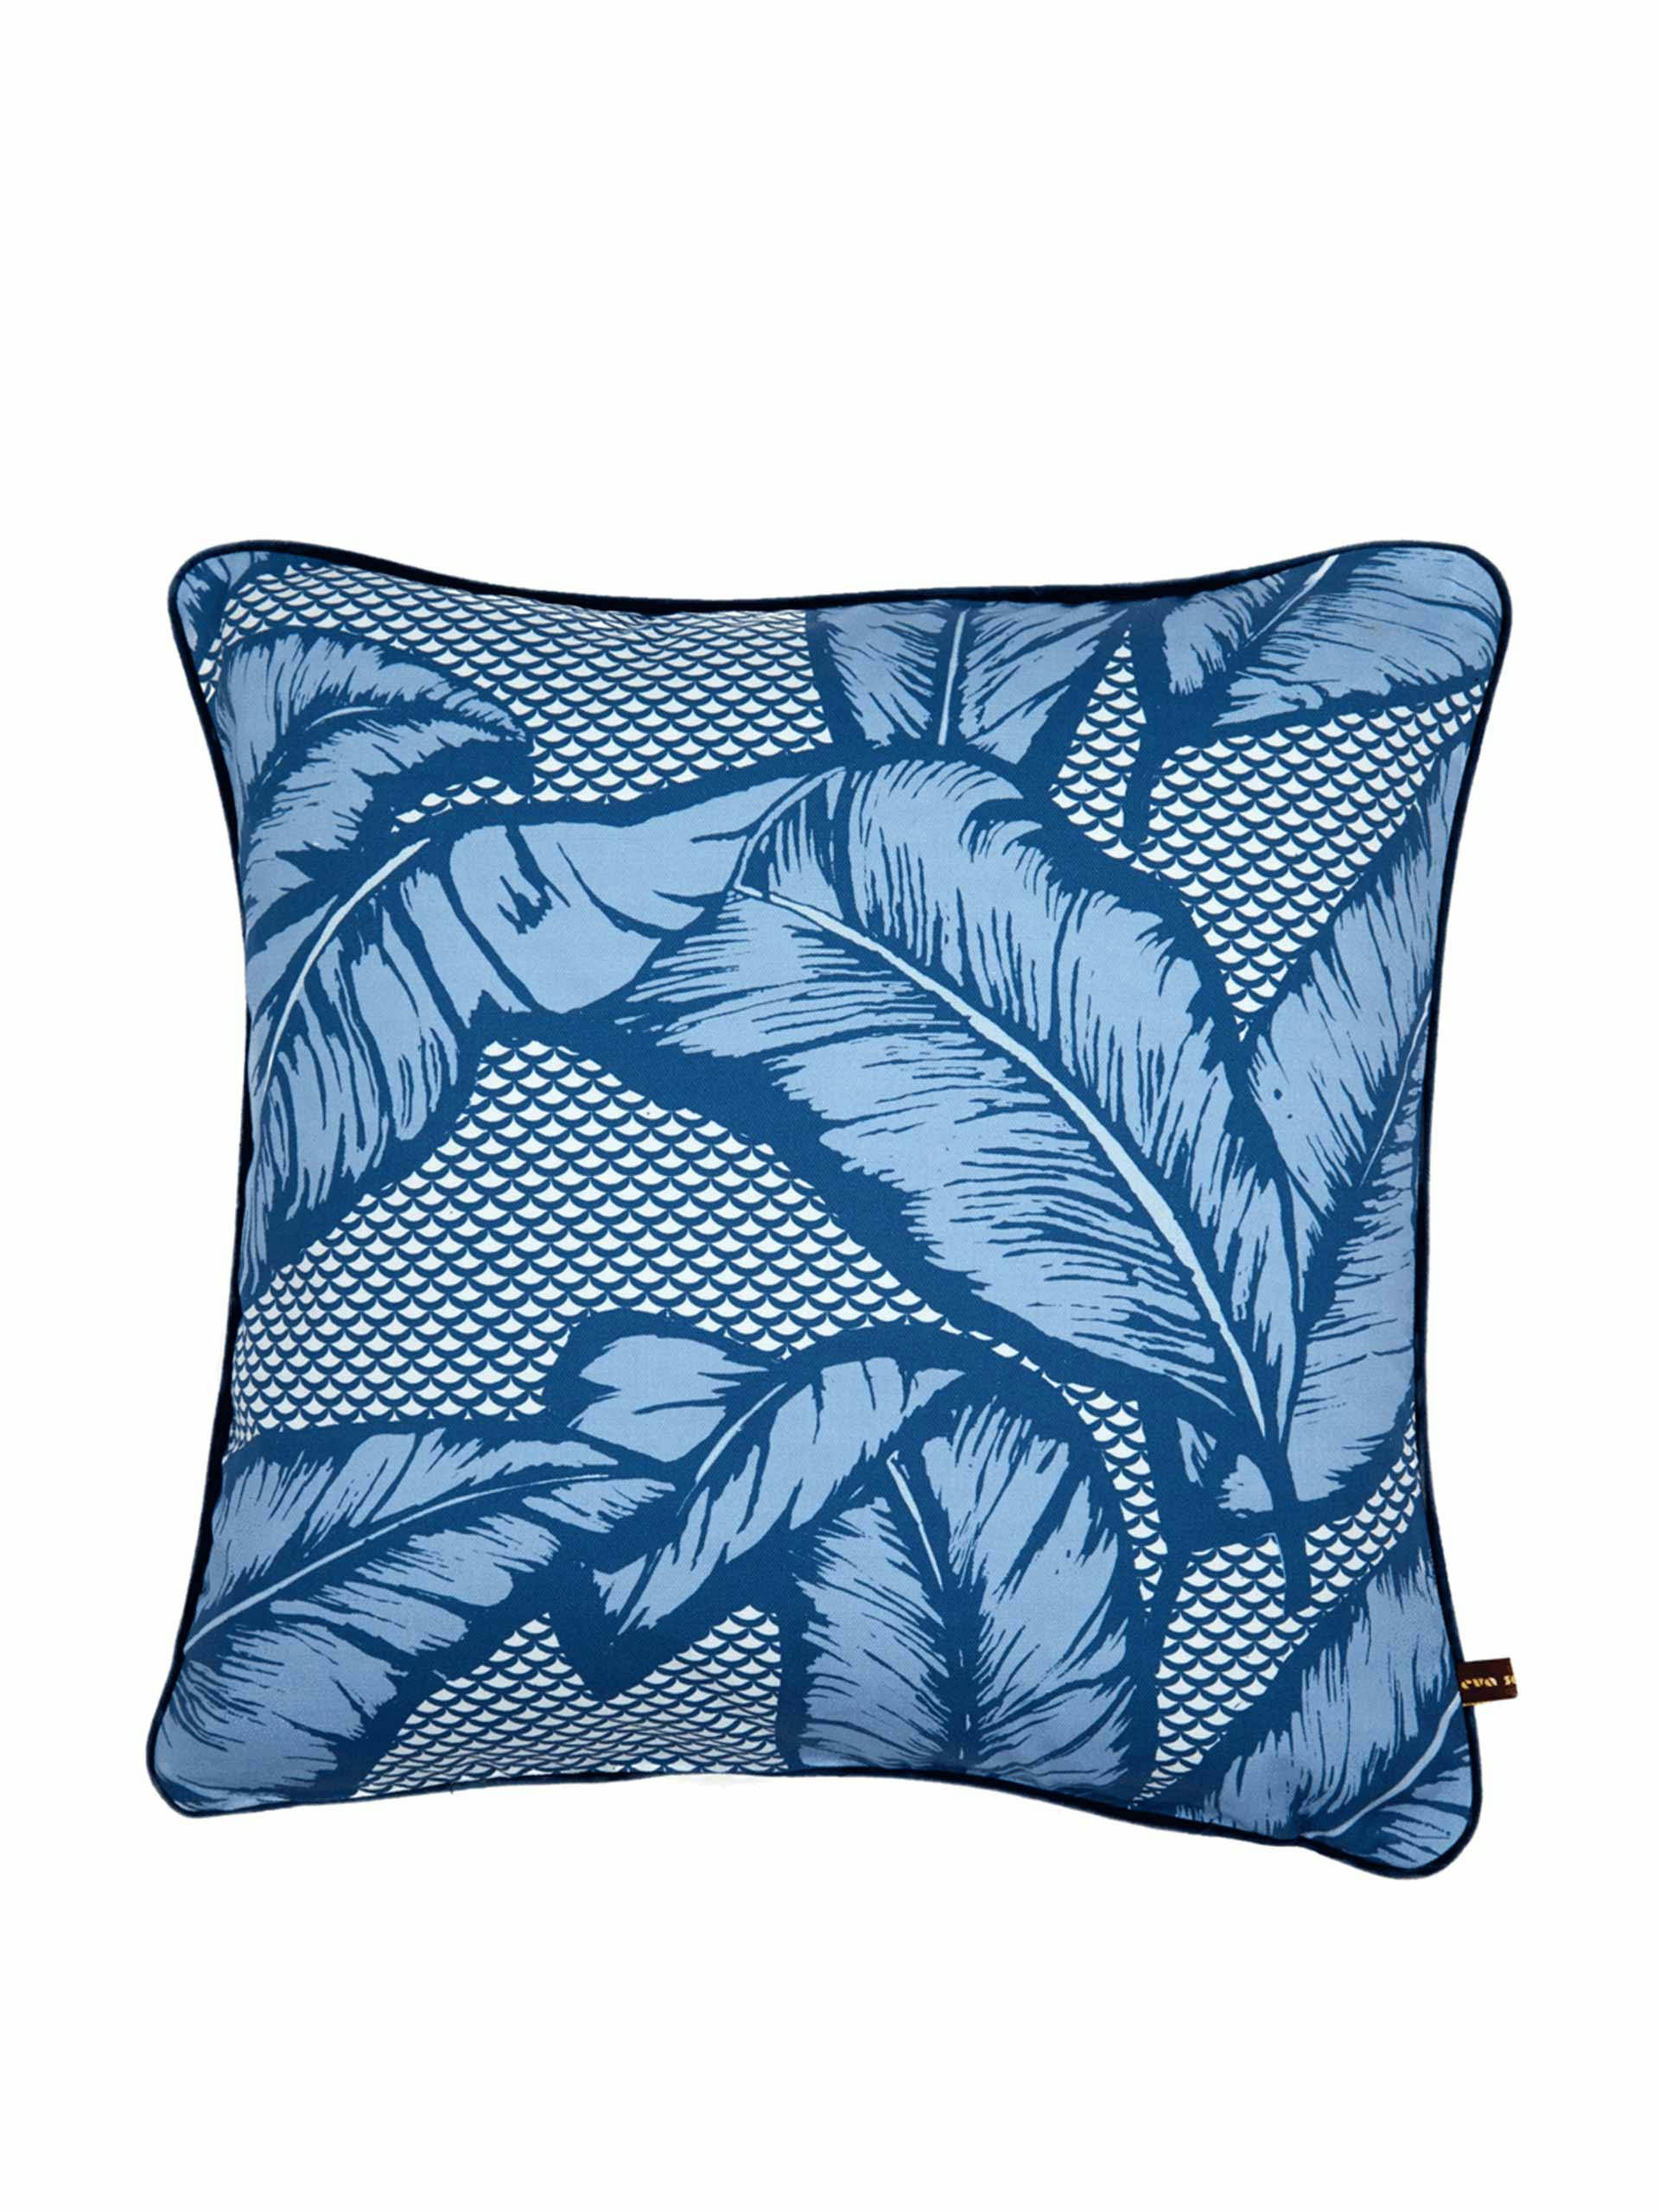 Vibrant banana leaf design cushion